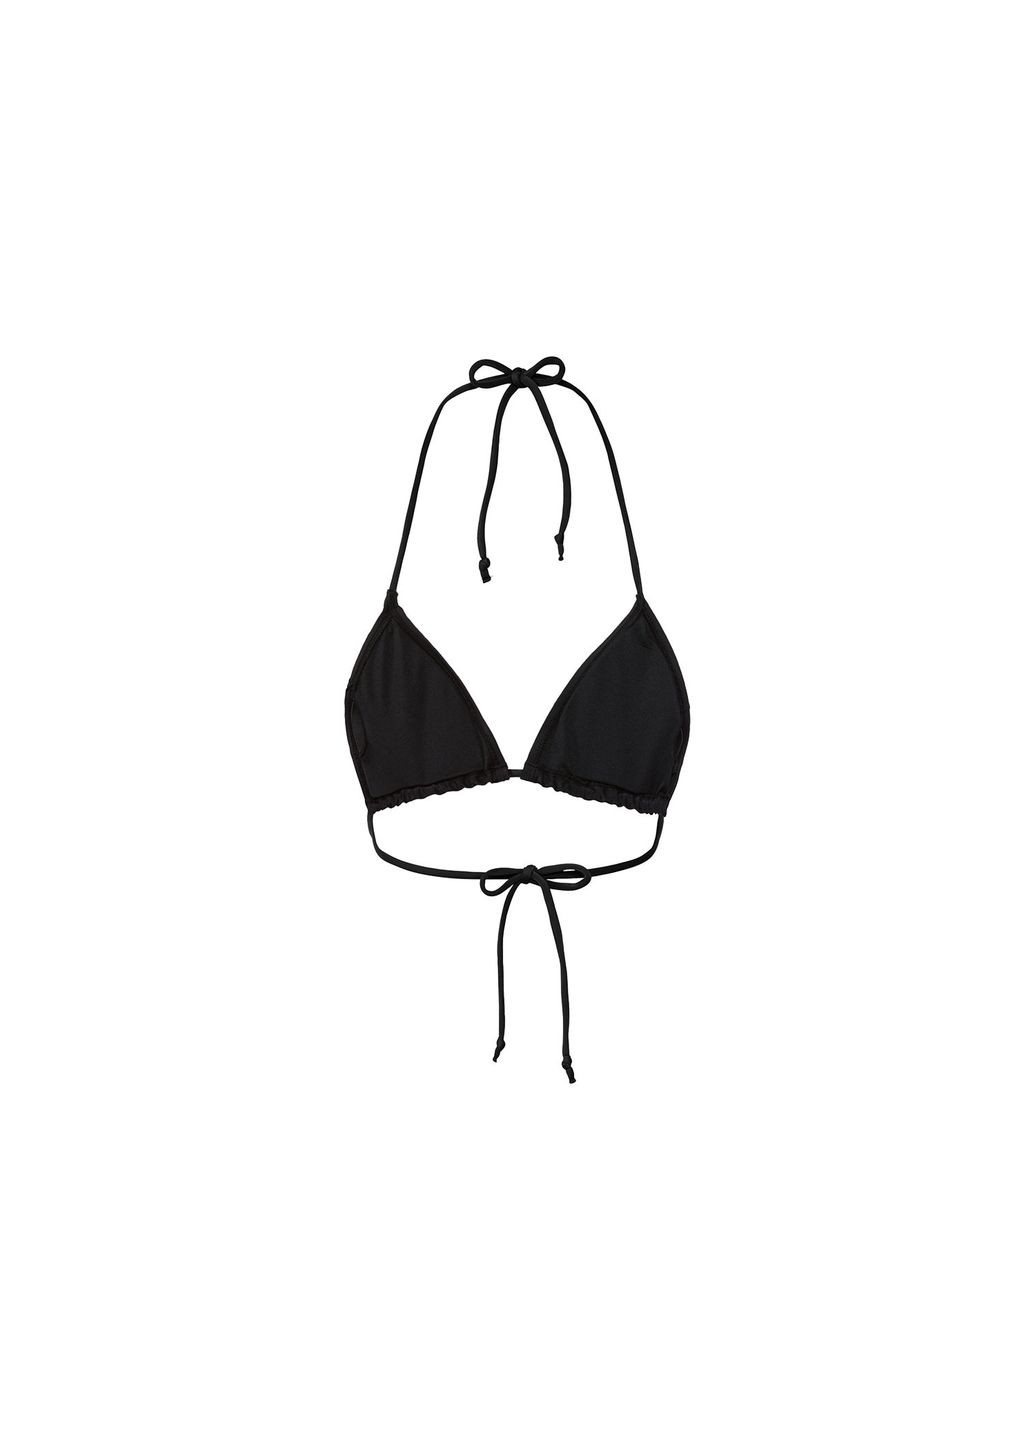 Черный купальник раздельный на подкладке для женщины lycra® 407621-1 бикини Esmara